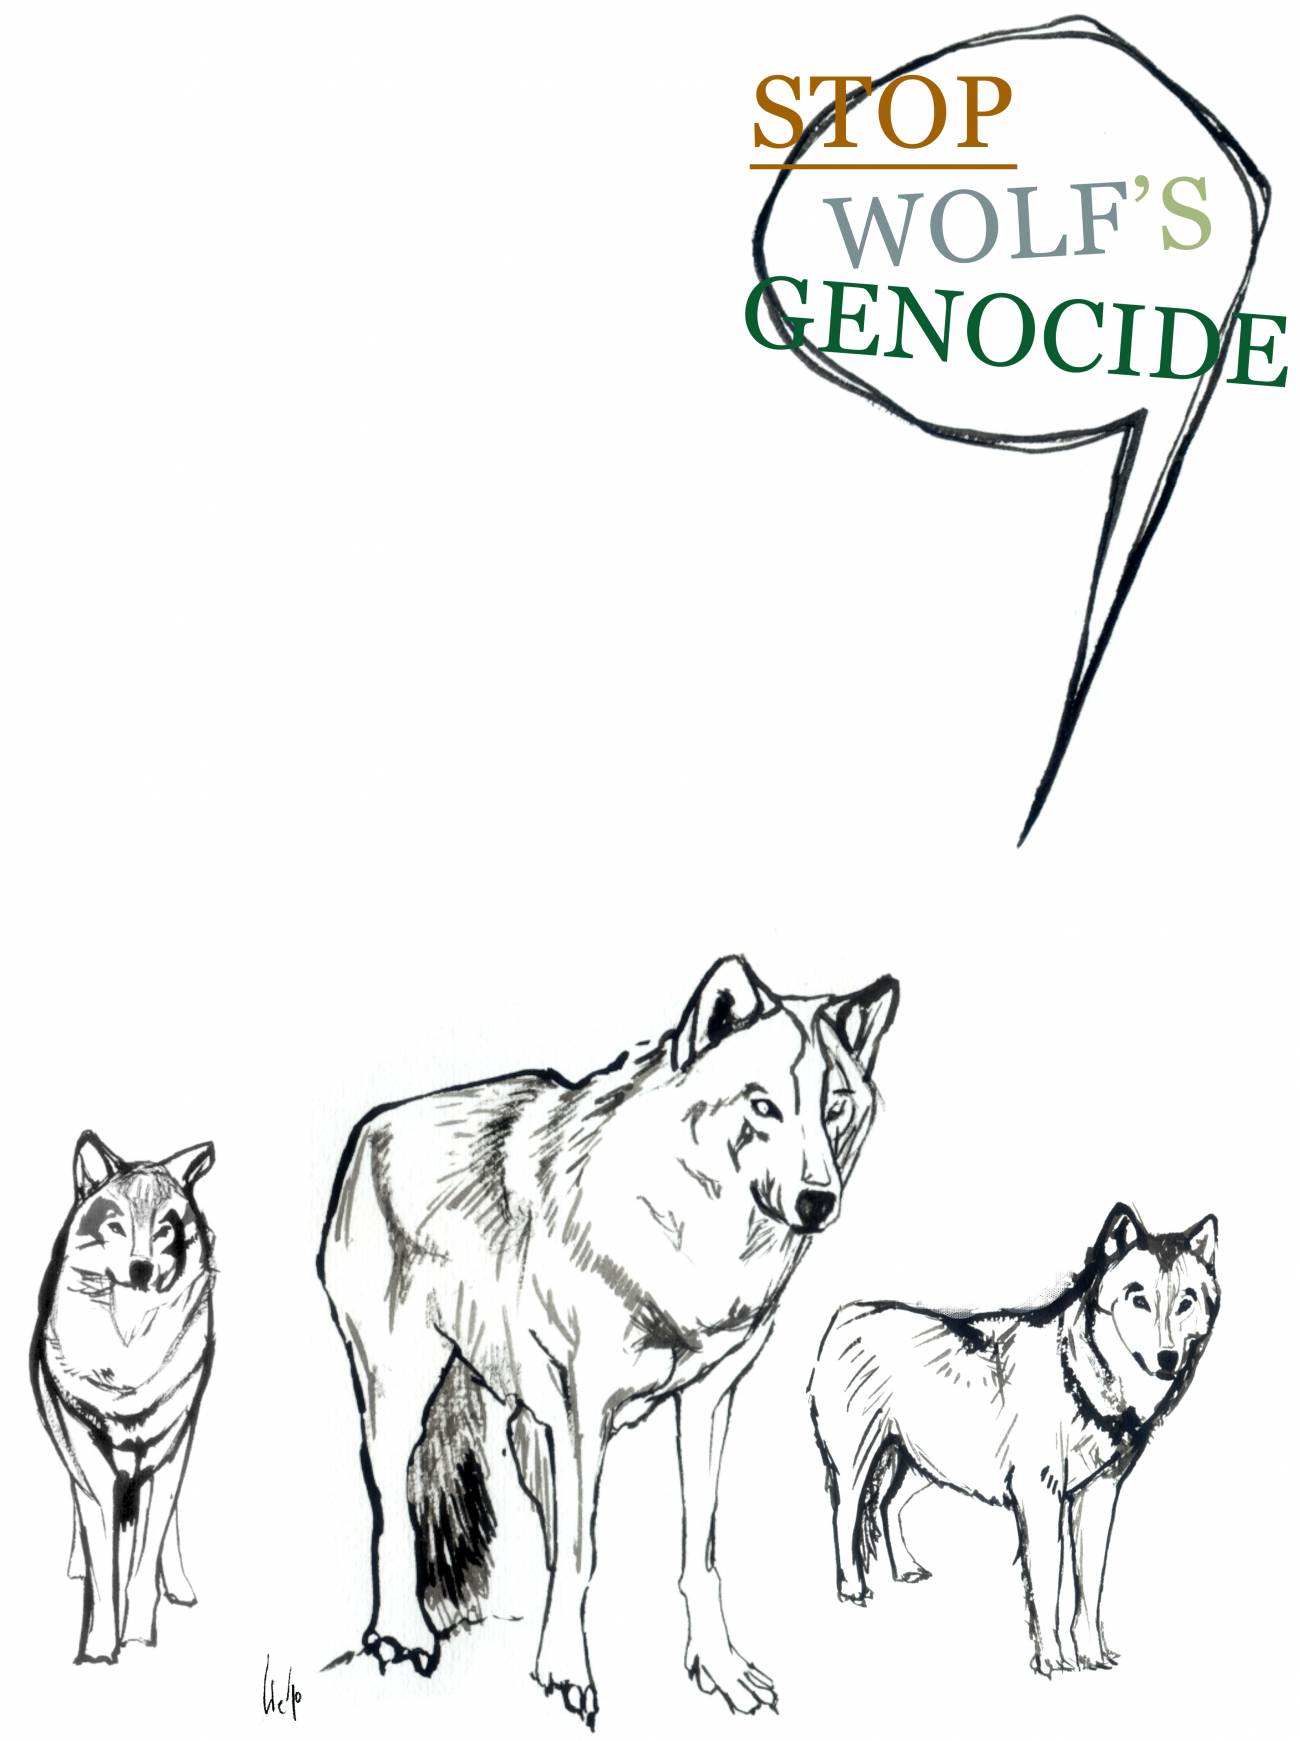 Proponen introducir poblaciones de lobos controladas para restablecer ecosistemas